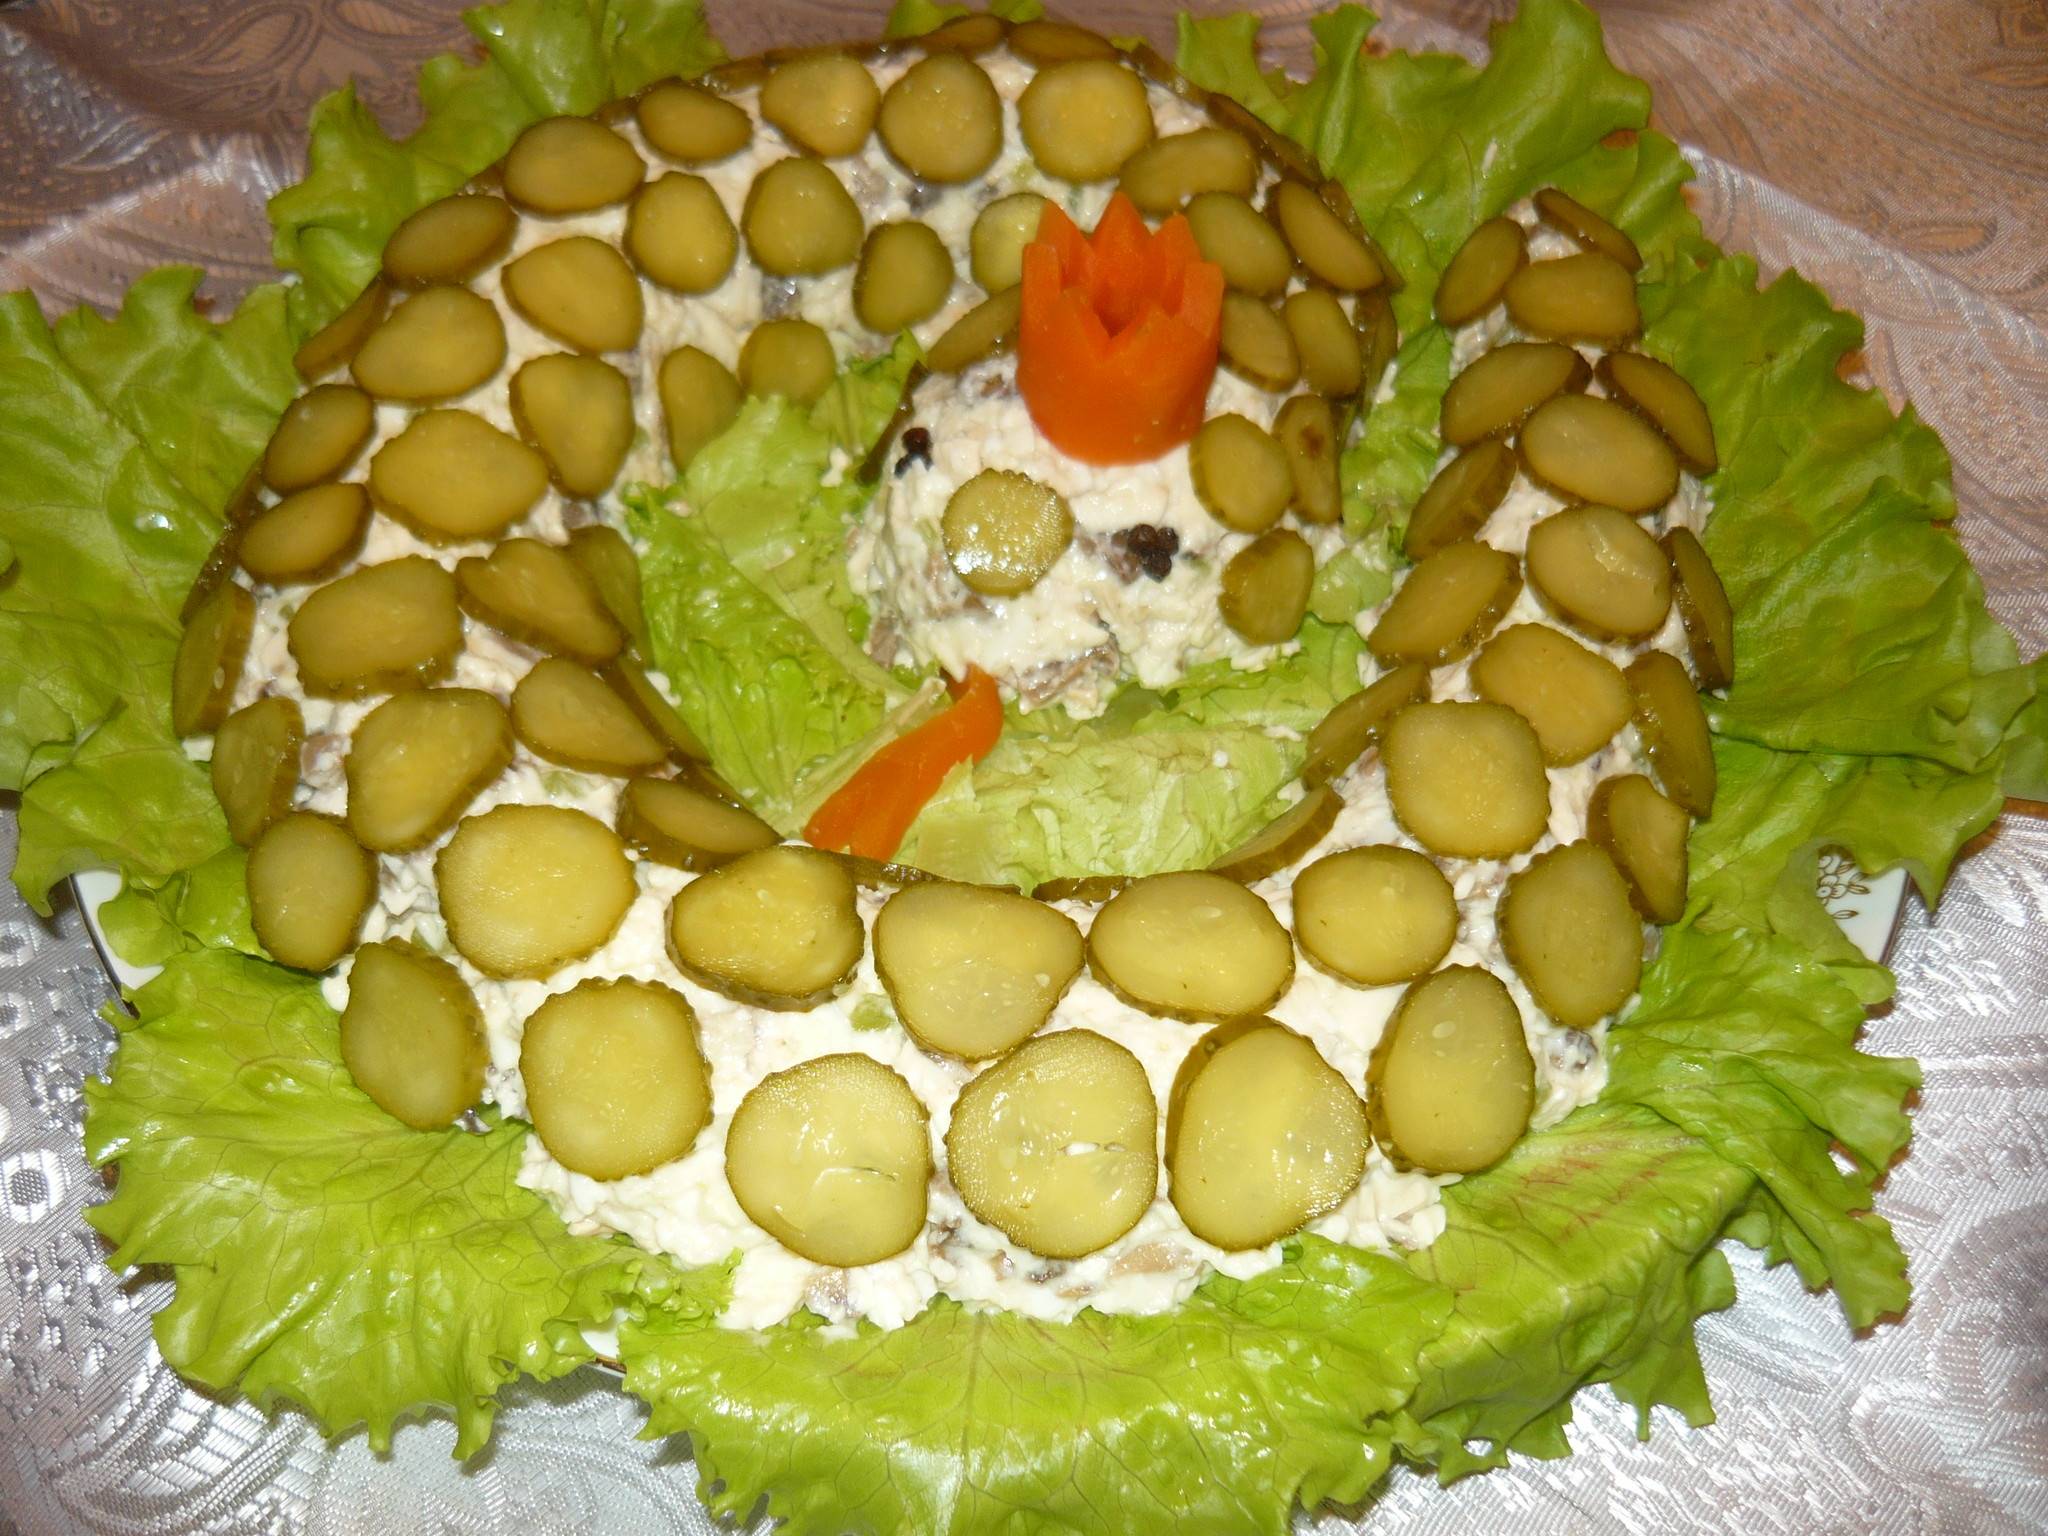 Салаты на день рождения: простые и вкусные рецепты салатов для дня рождения